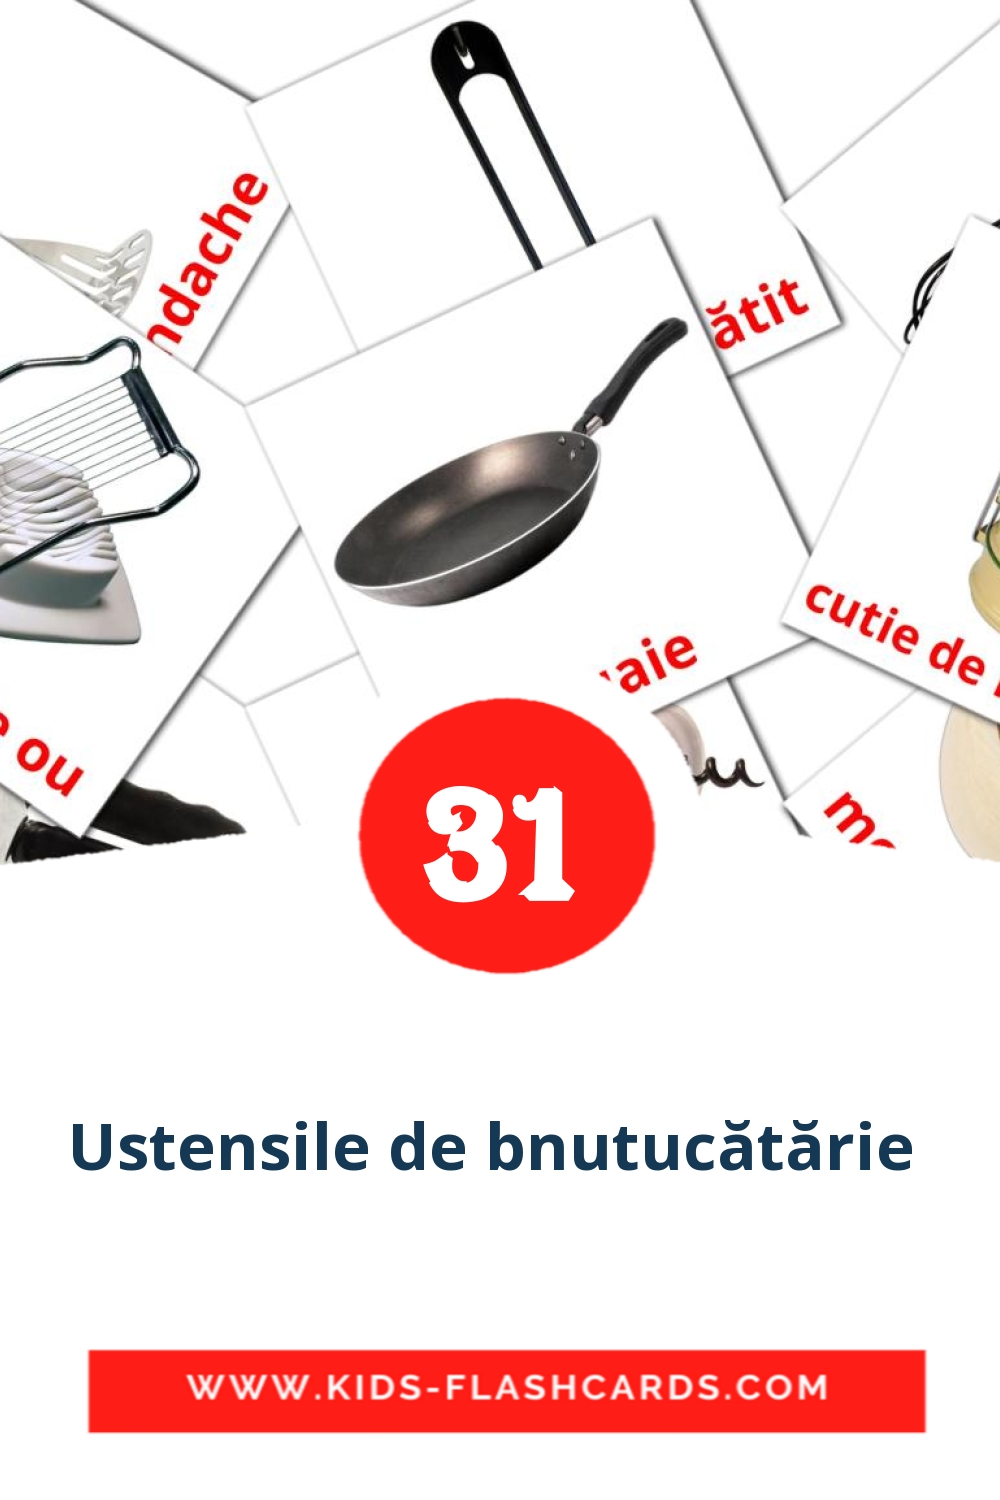 31 Ustensile de bnutucătărie  Bildkarten für den Kindergarten auf Rumänisch